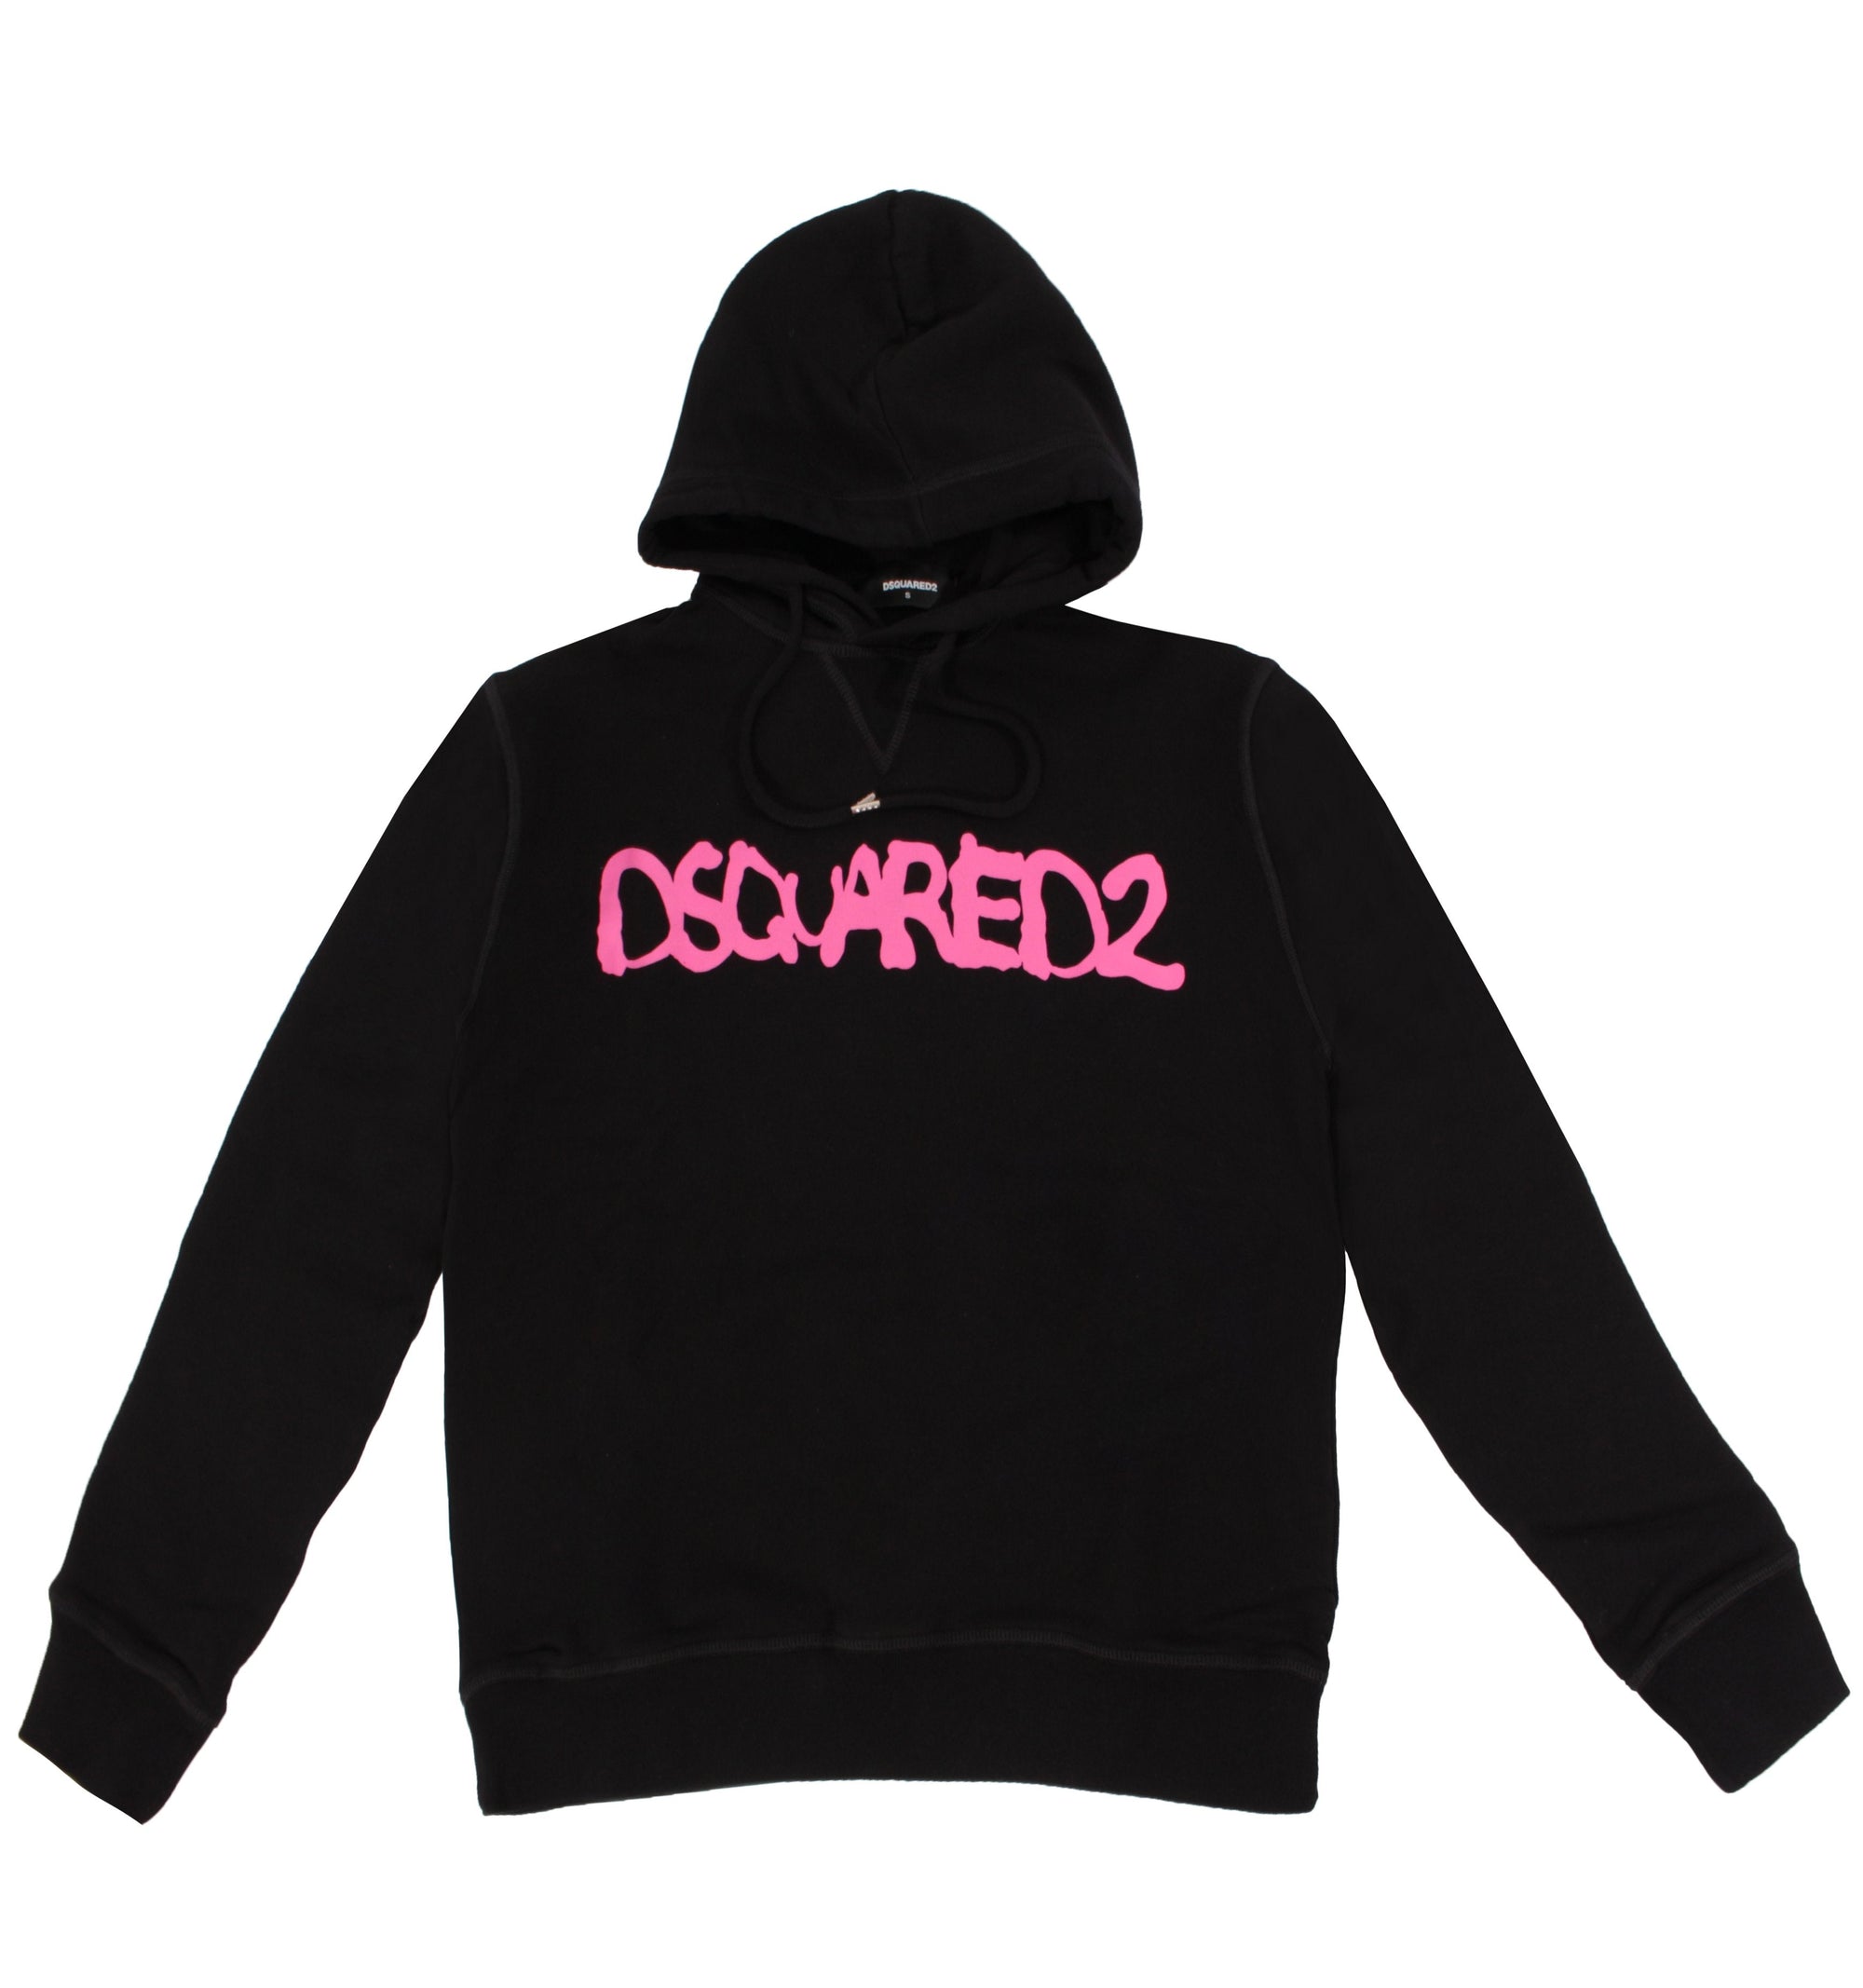 Dsquared2 Logo Hoodie - Black & Pink